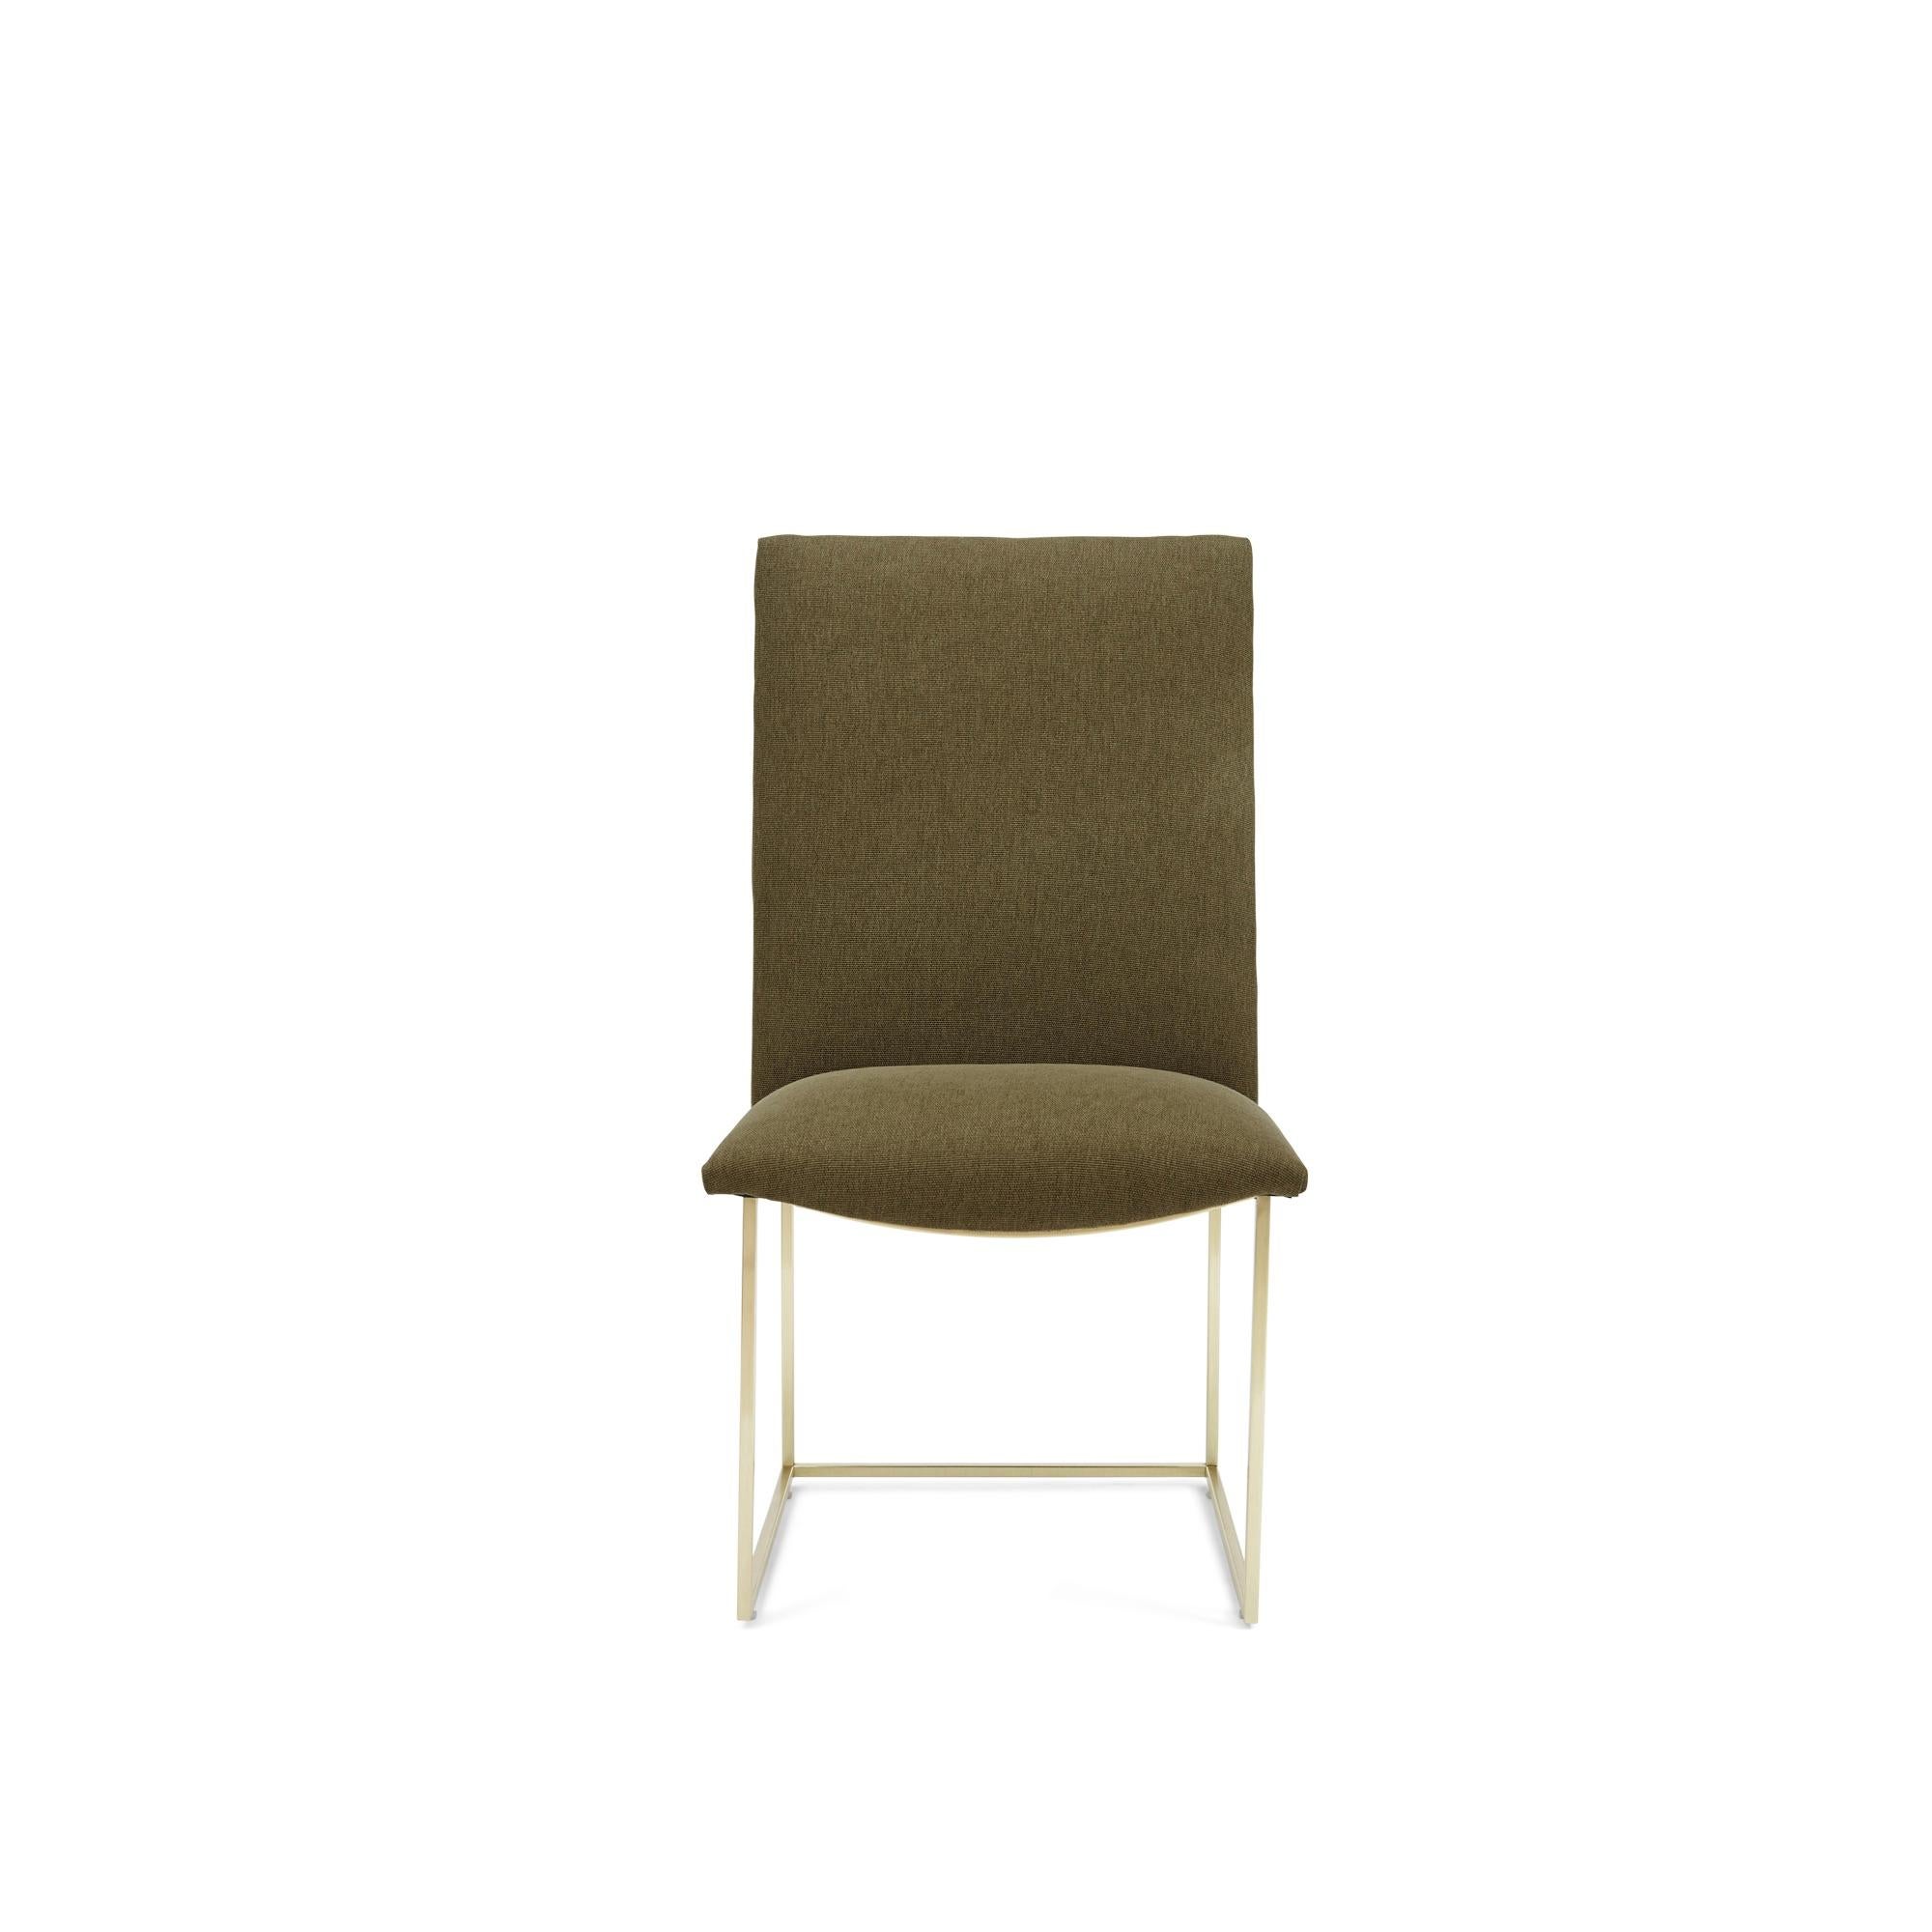 La chaise de salle à manger à structure fine présente un dossier haut et une silhouette sans bras qui reposent sur une base métallique fine. 

La collection Lawson-Fenning est conçue et fabriquée à la main à Los Angeles, en Californie.